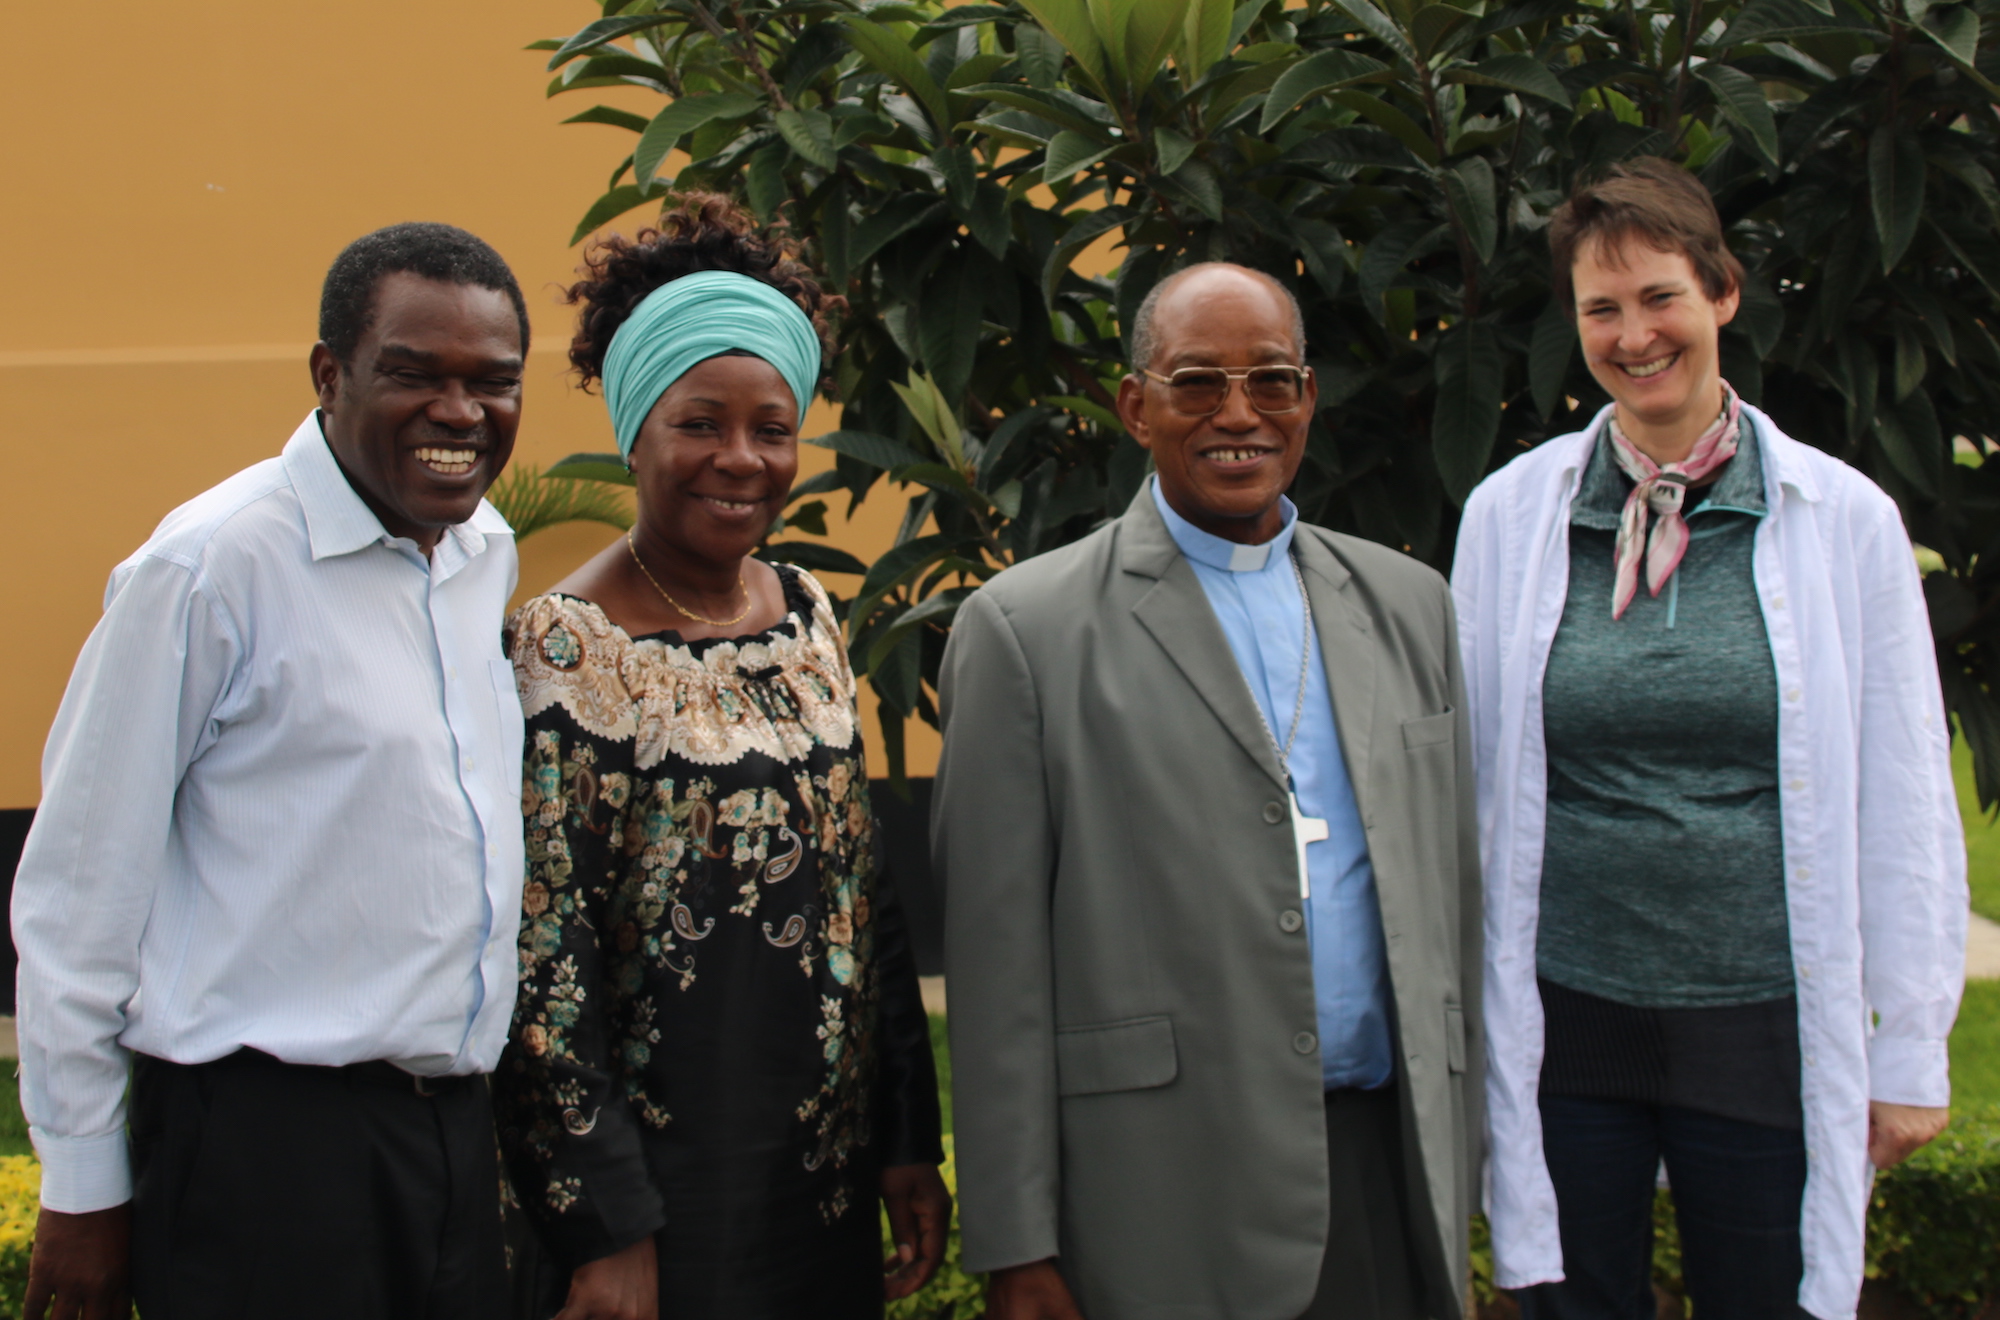 Friederike Heidenhof mit Erzbischof Josaphat Lebulu (2. v. r.) und den Leitern des Canaan Waisenhauses für HIV-positive Kinder, Dr. Alex und Caritas Lengeju. (c) Partnerschaft für Afrika